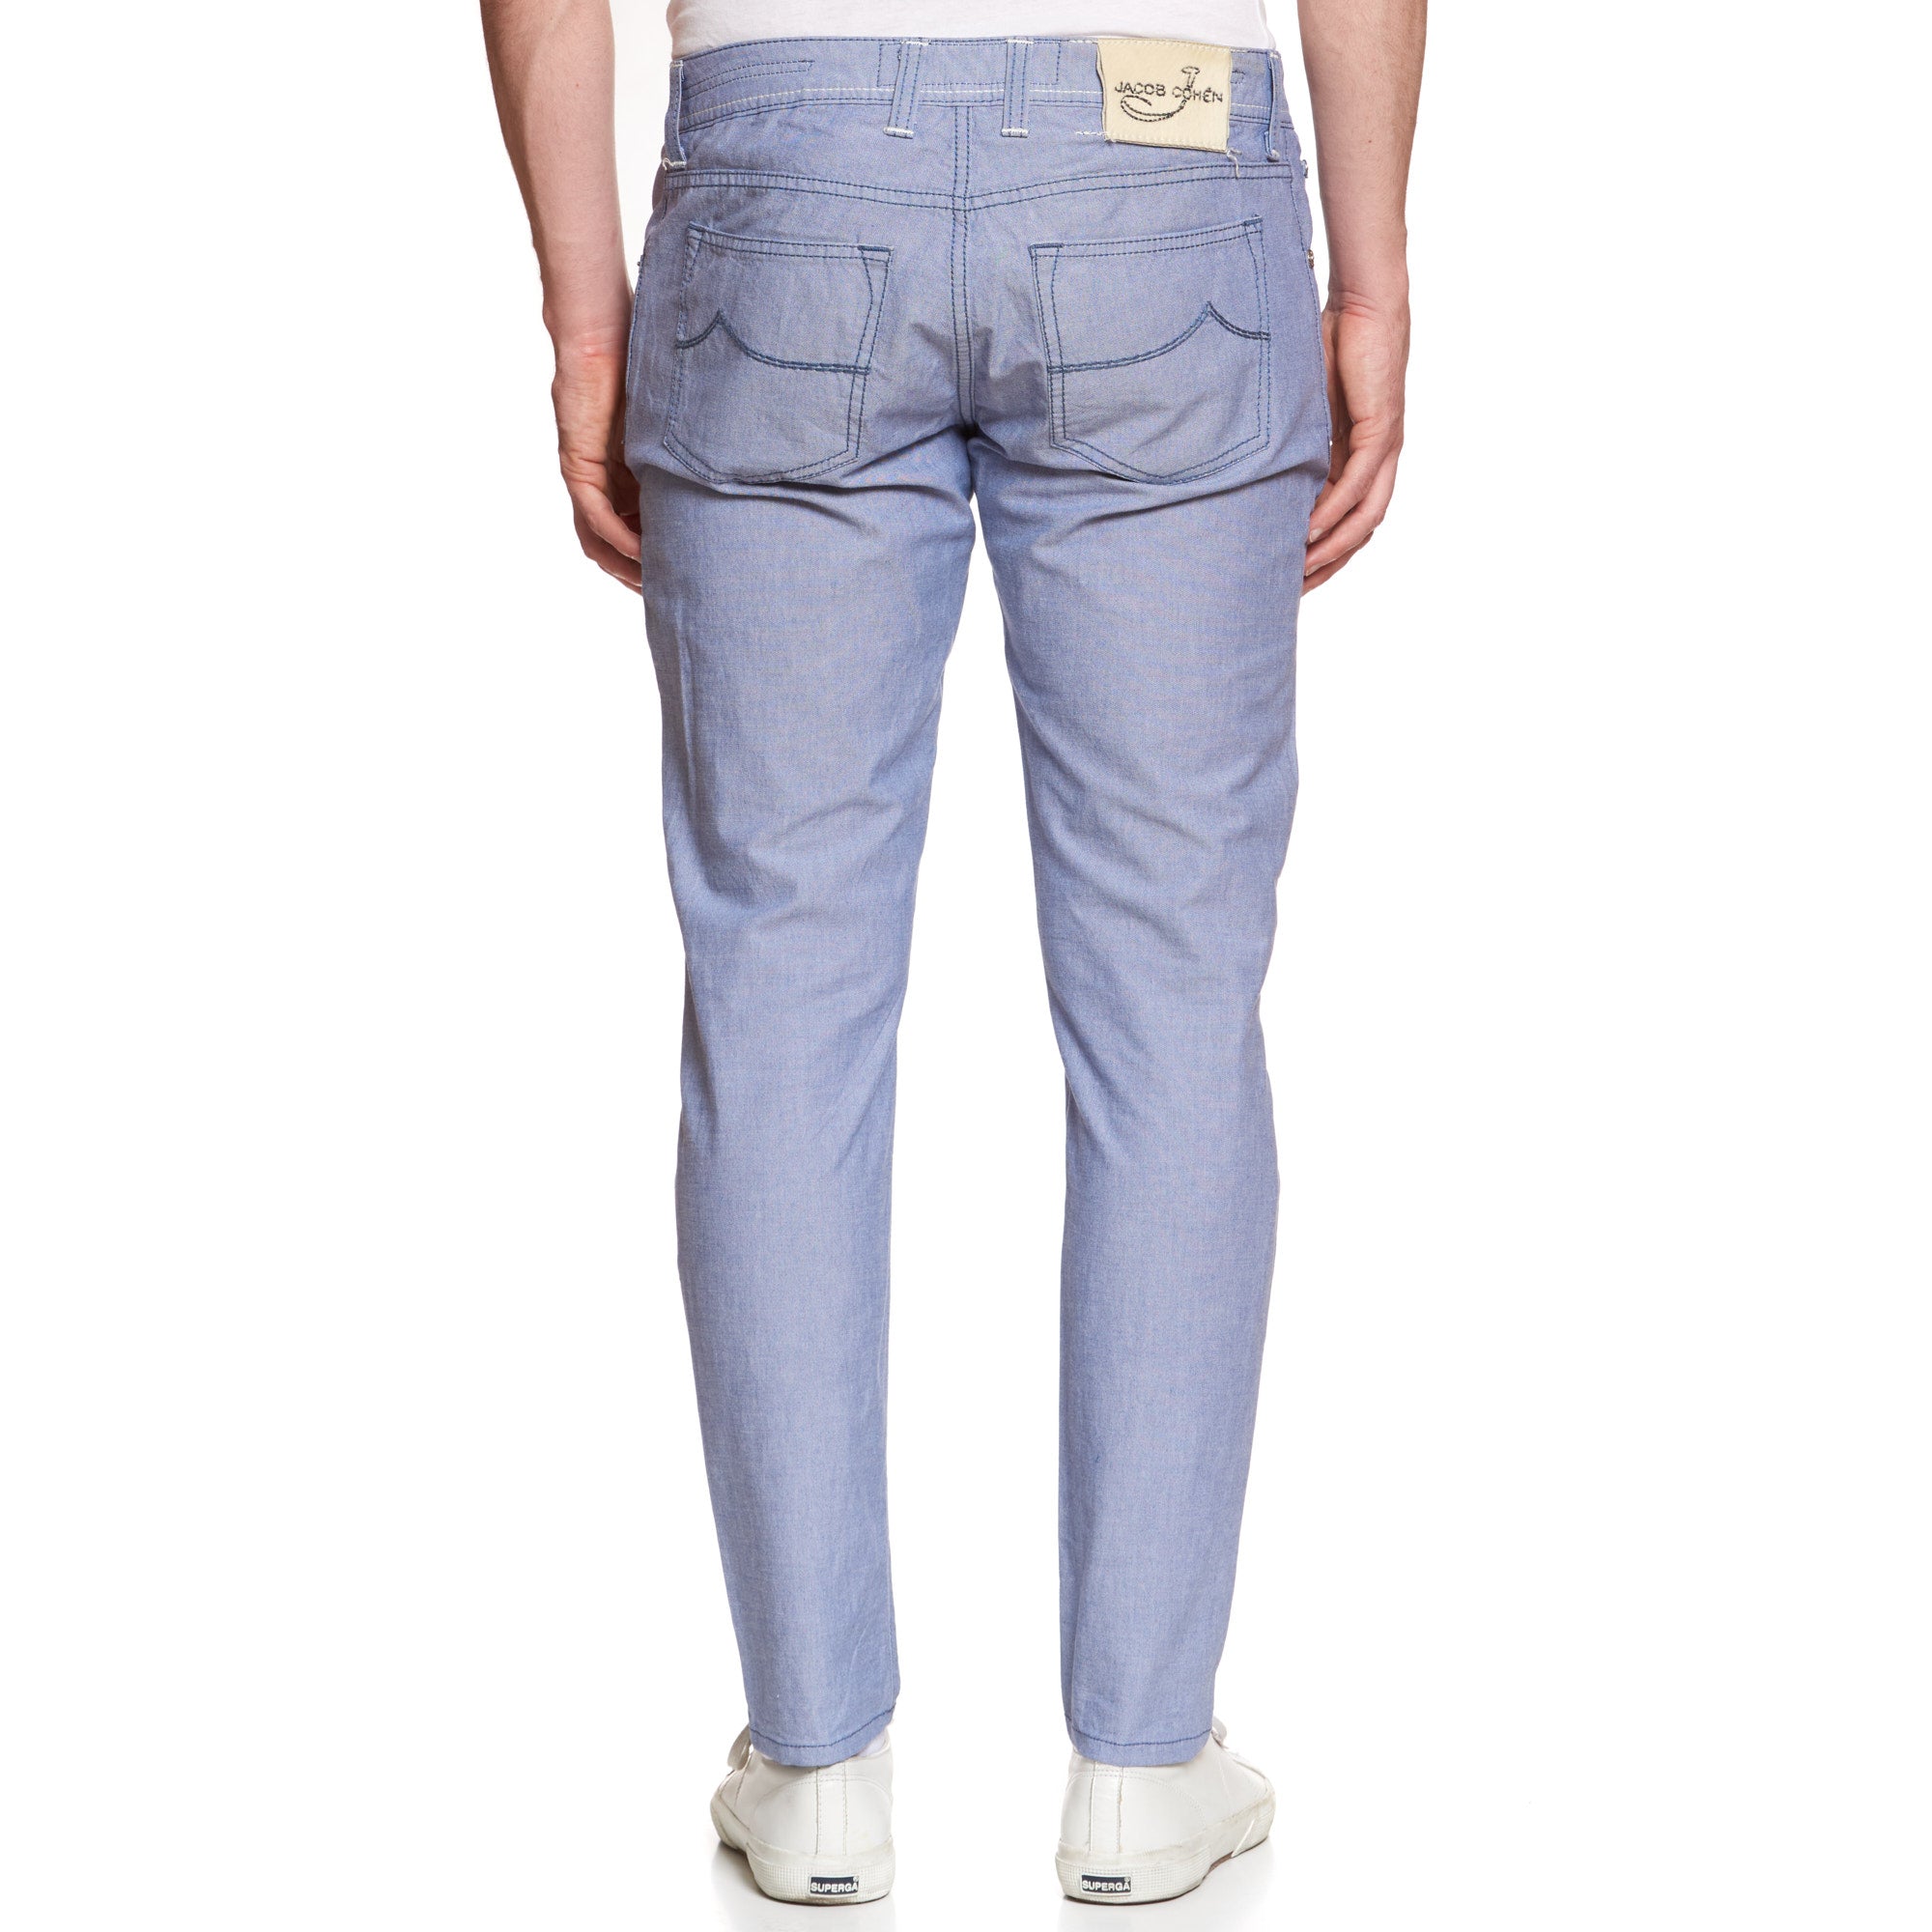 JACOB COHEN J688 Comfort Blue Cotton Stretch Slim Fit Jeans Pants US 33 JACOB COHEN